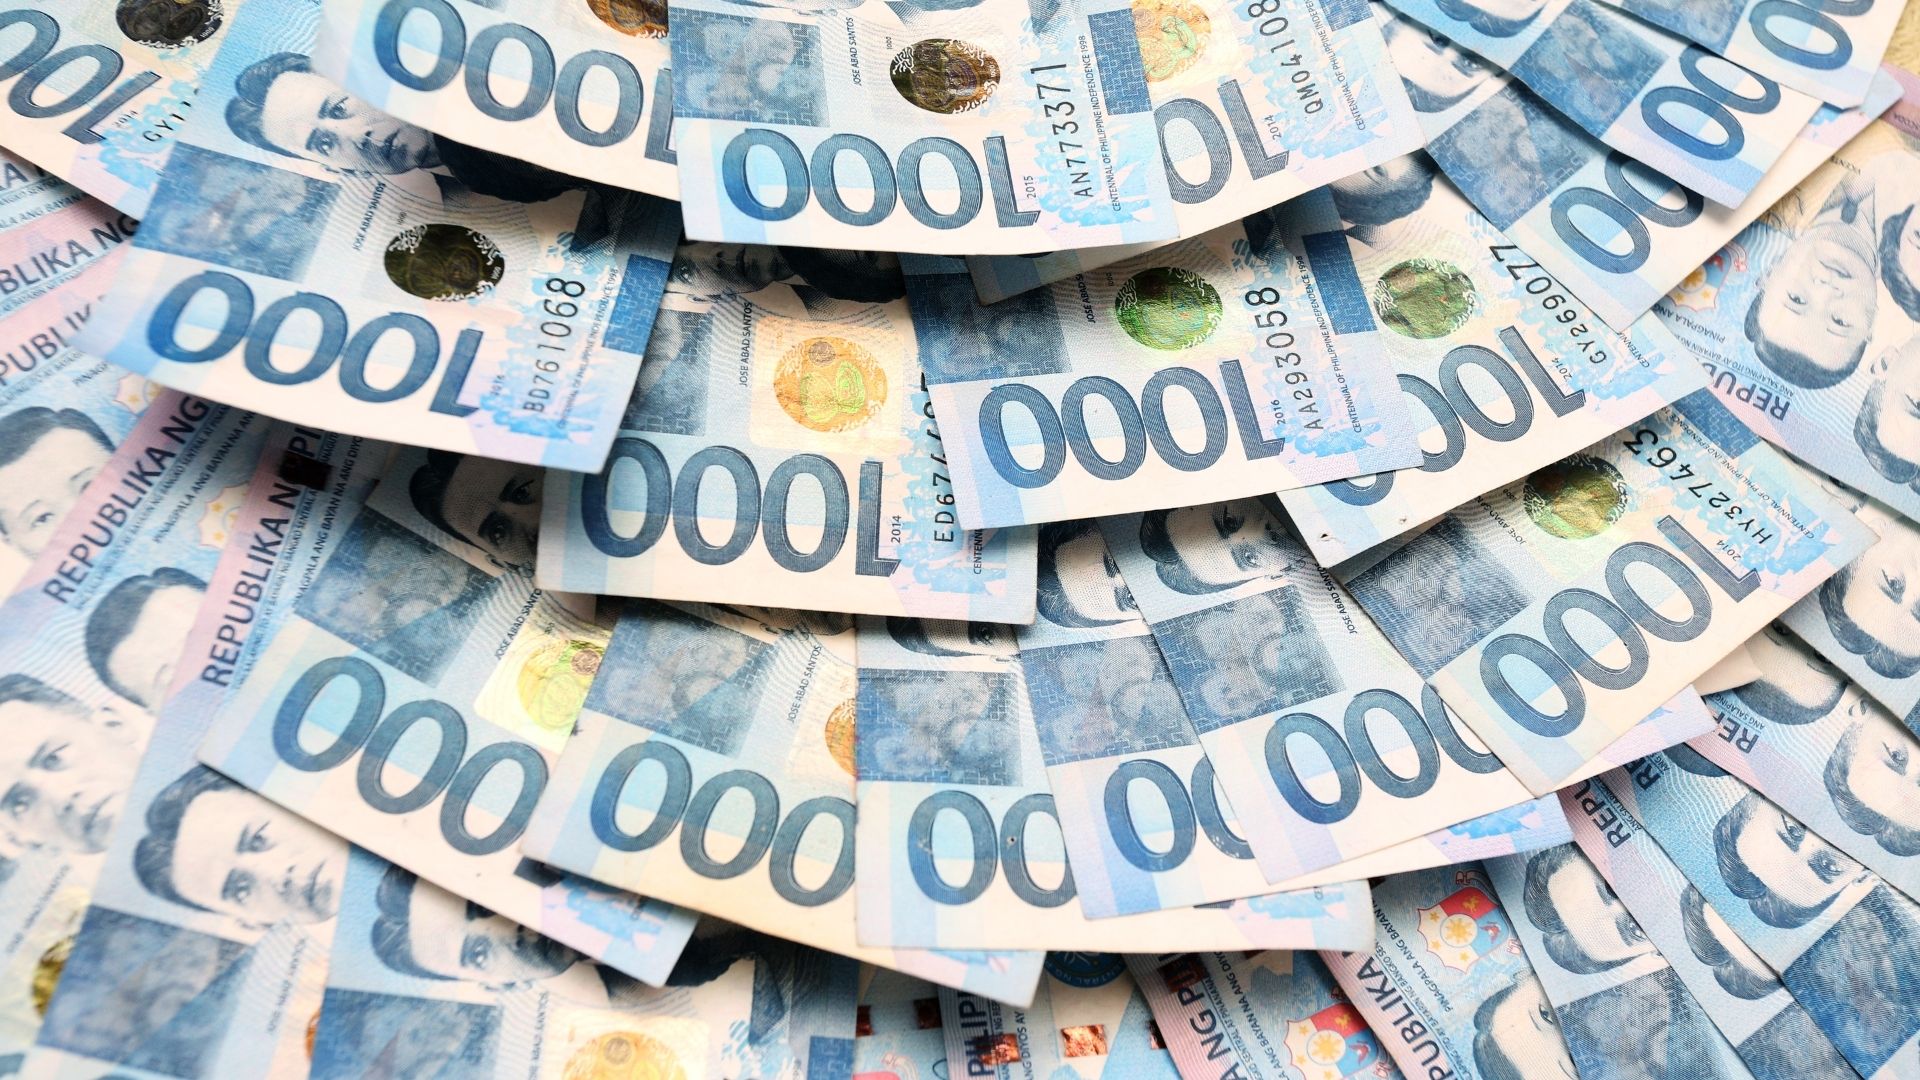 1000 Philippine paper bills